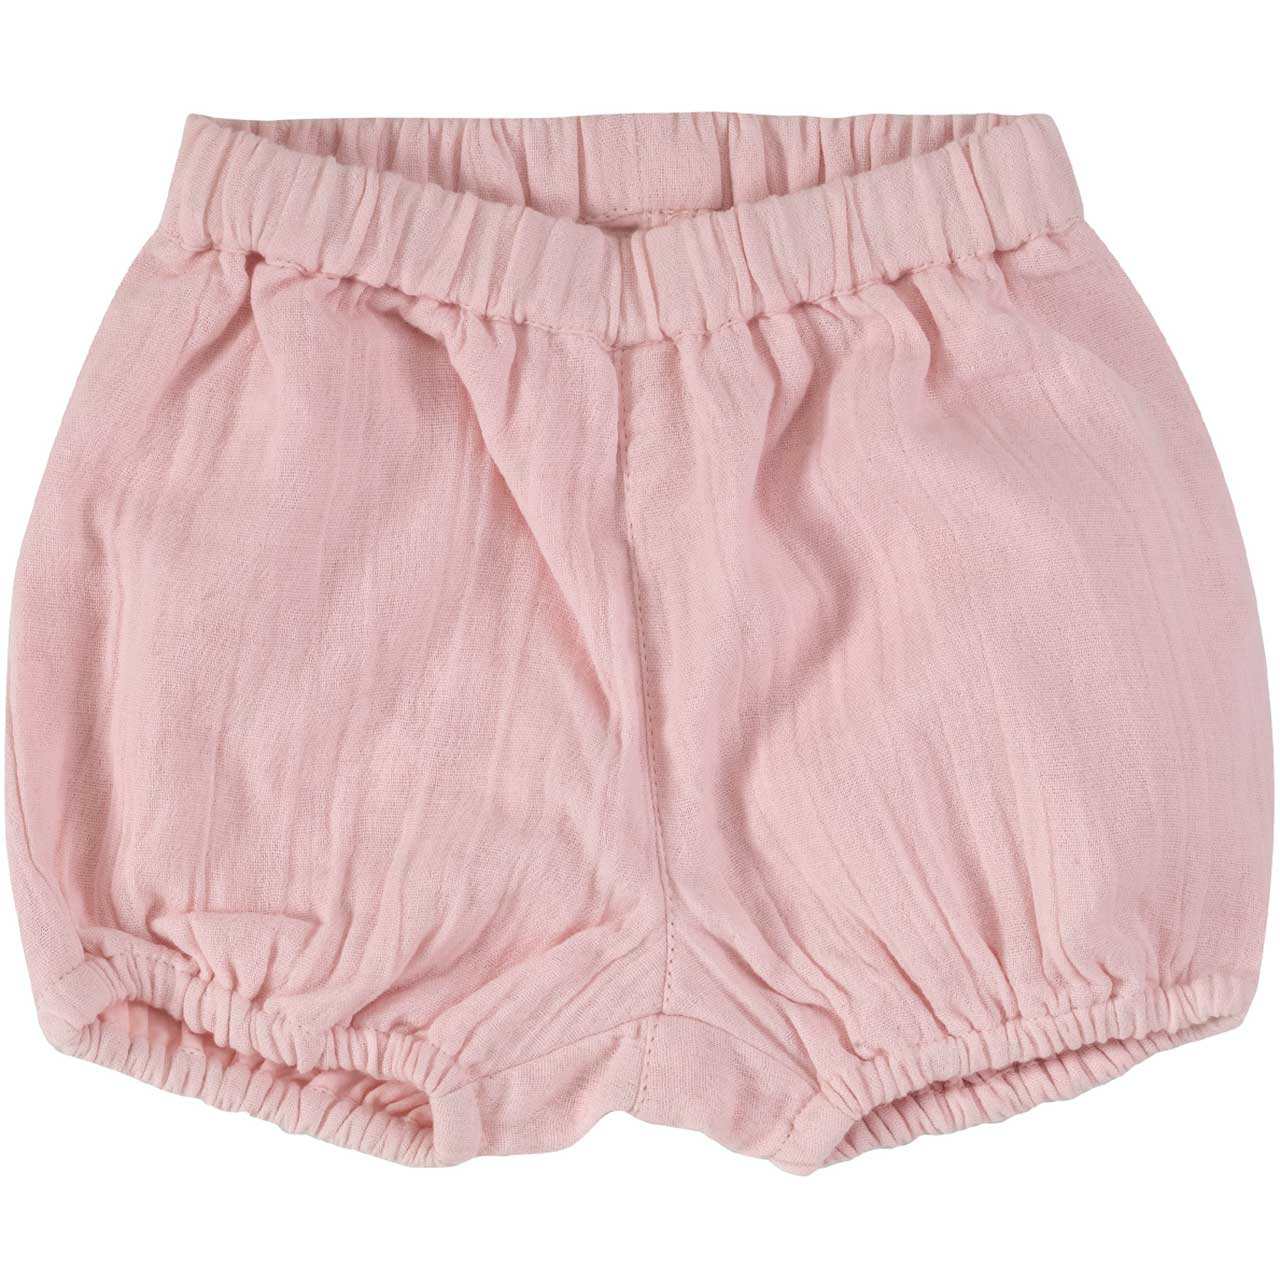 Luftige, lockere Musselin Shorts rosa